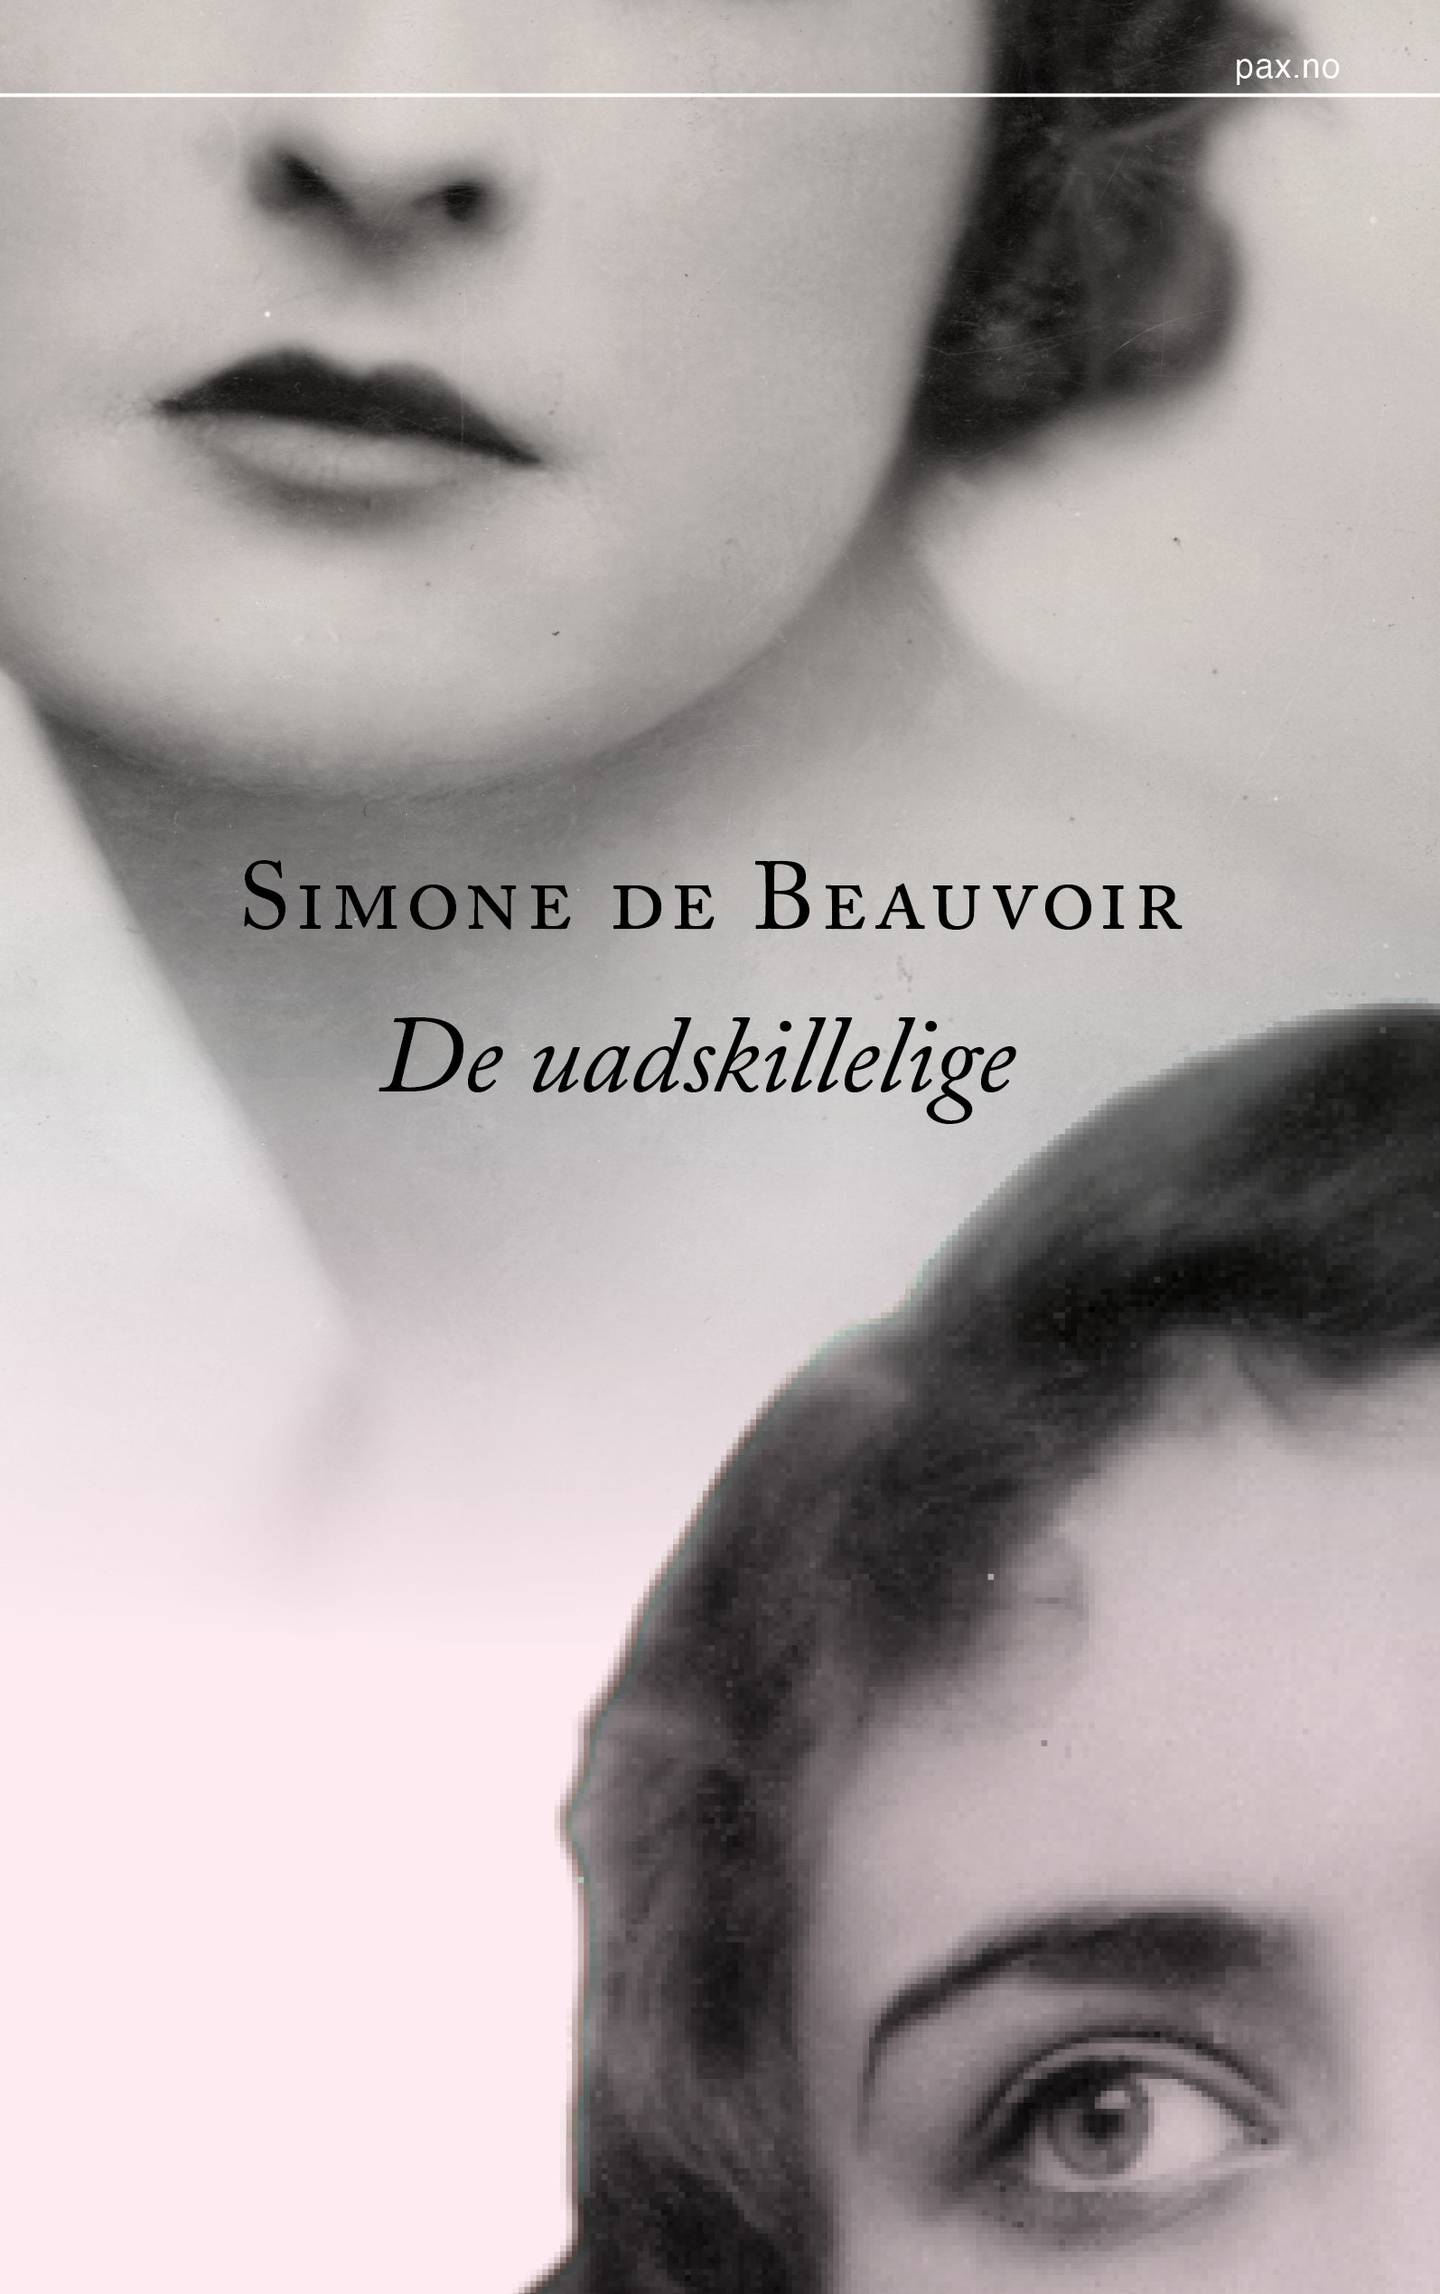 Simone de Beauvoir, De uadskillelige.